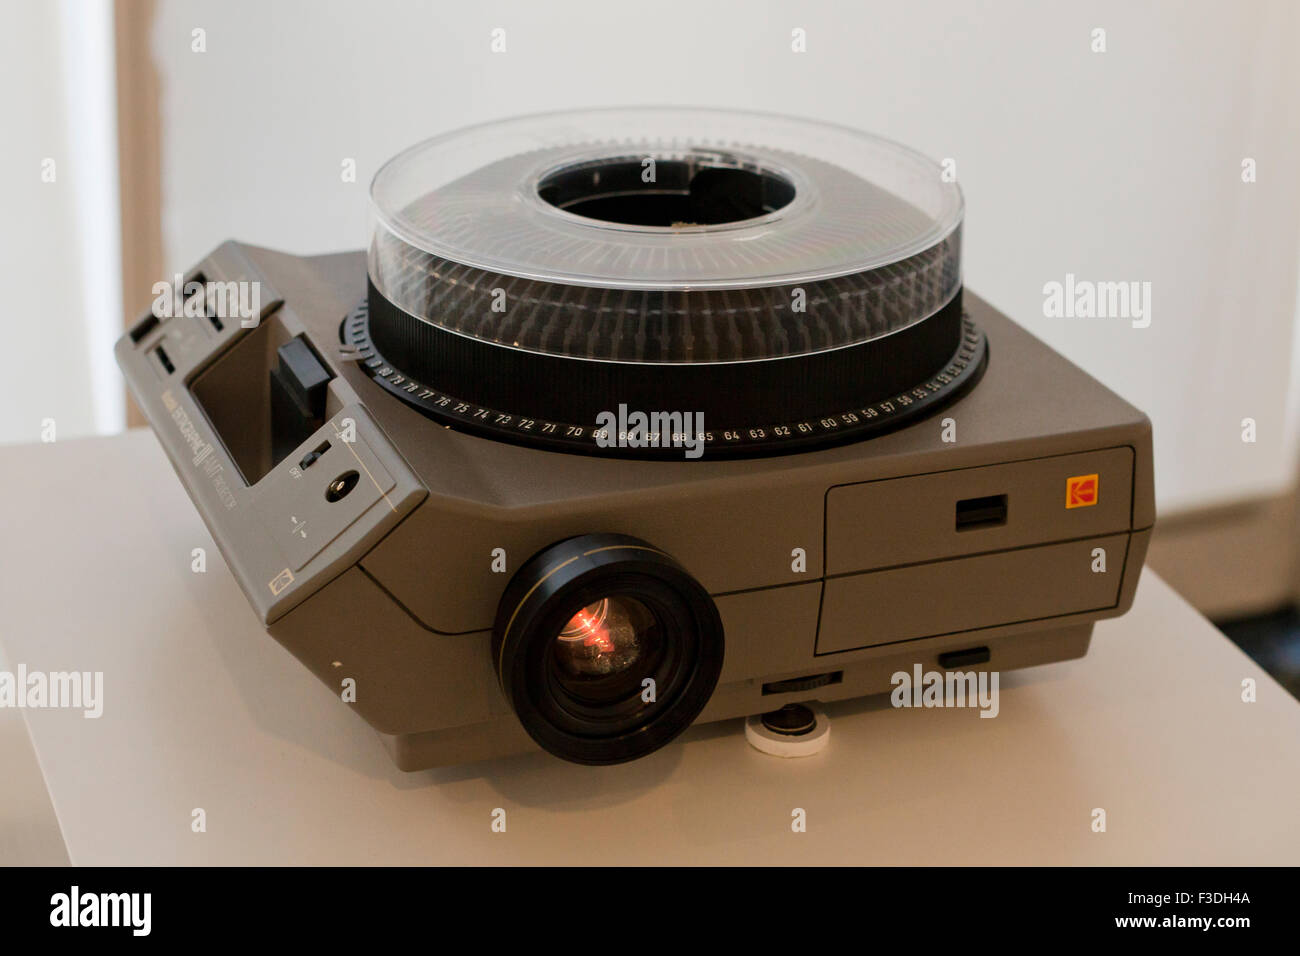 Proyector de diapositivas Kodak Ektagraphic AMT - EE.UU. Foto de stock